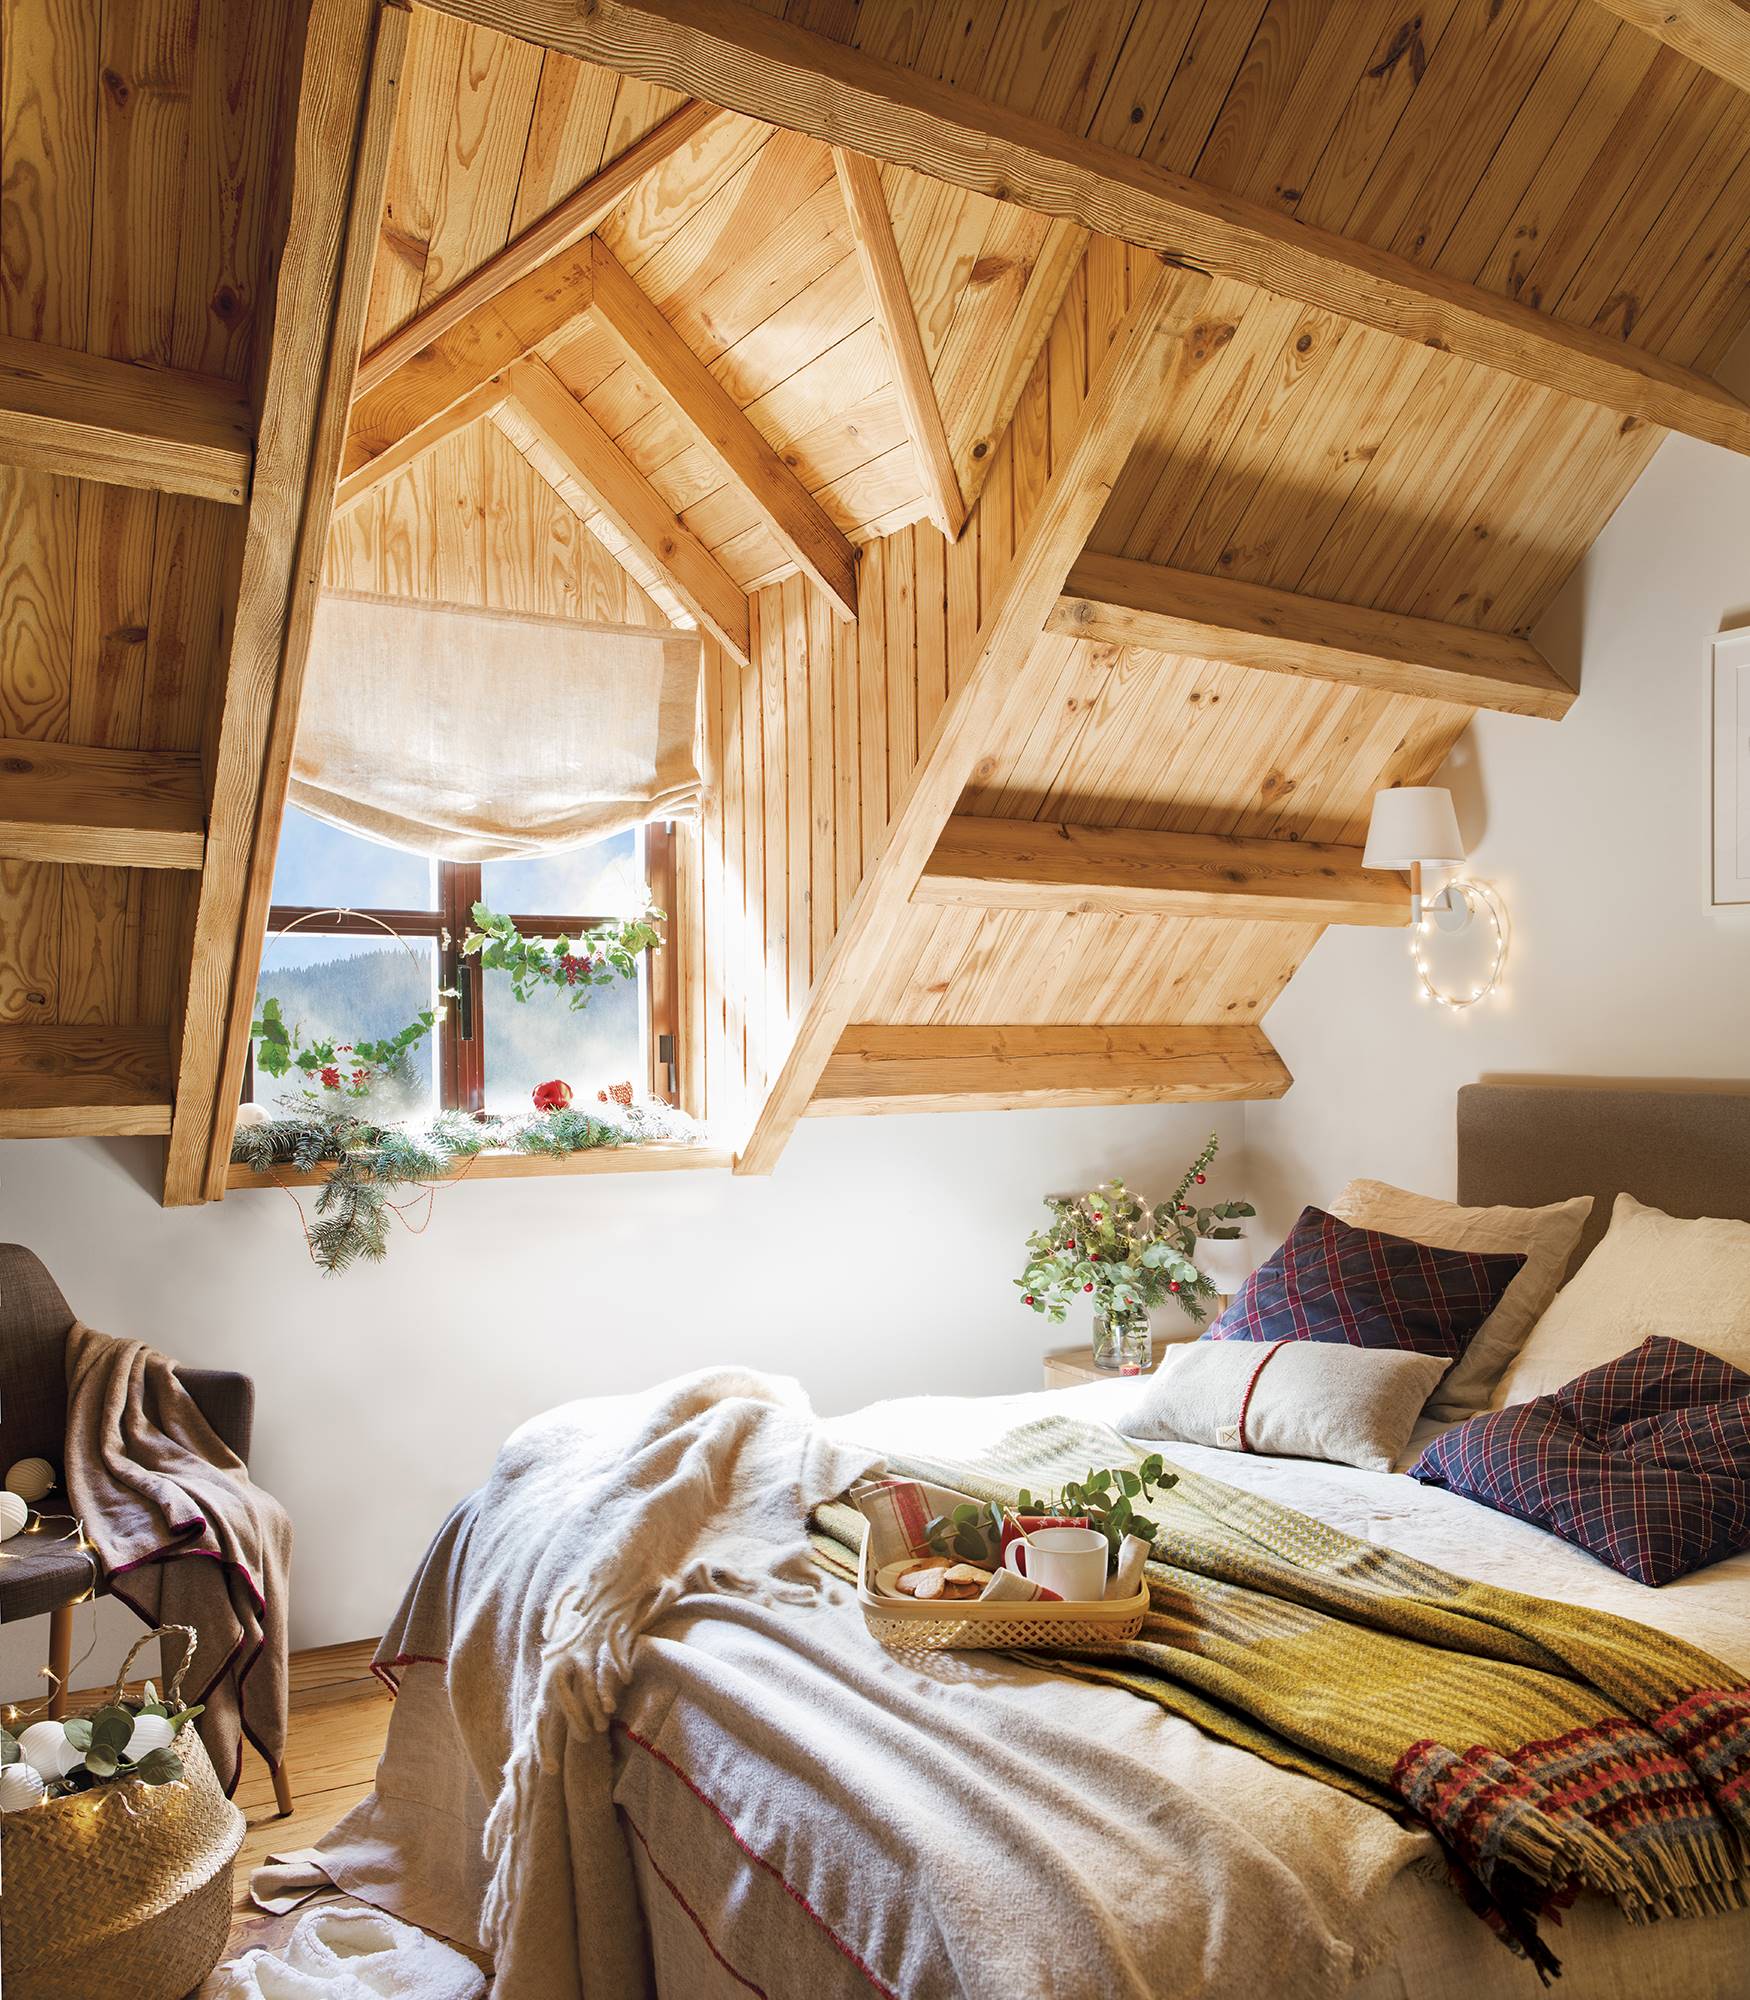 Dormitori abuhardillado con techos de madera y vigas decorado por Navidad. 